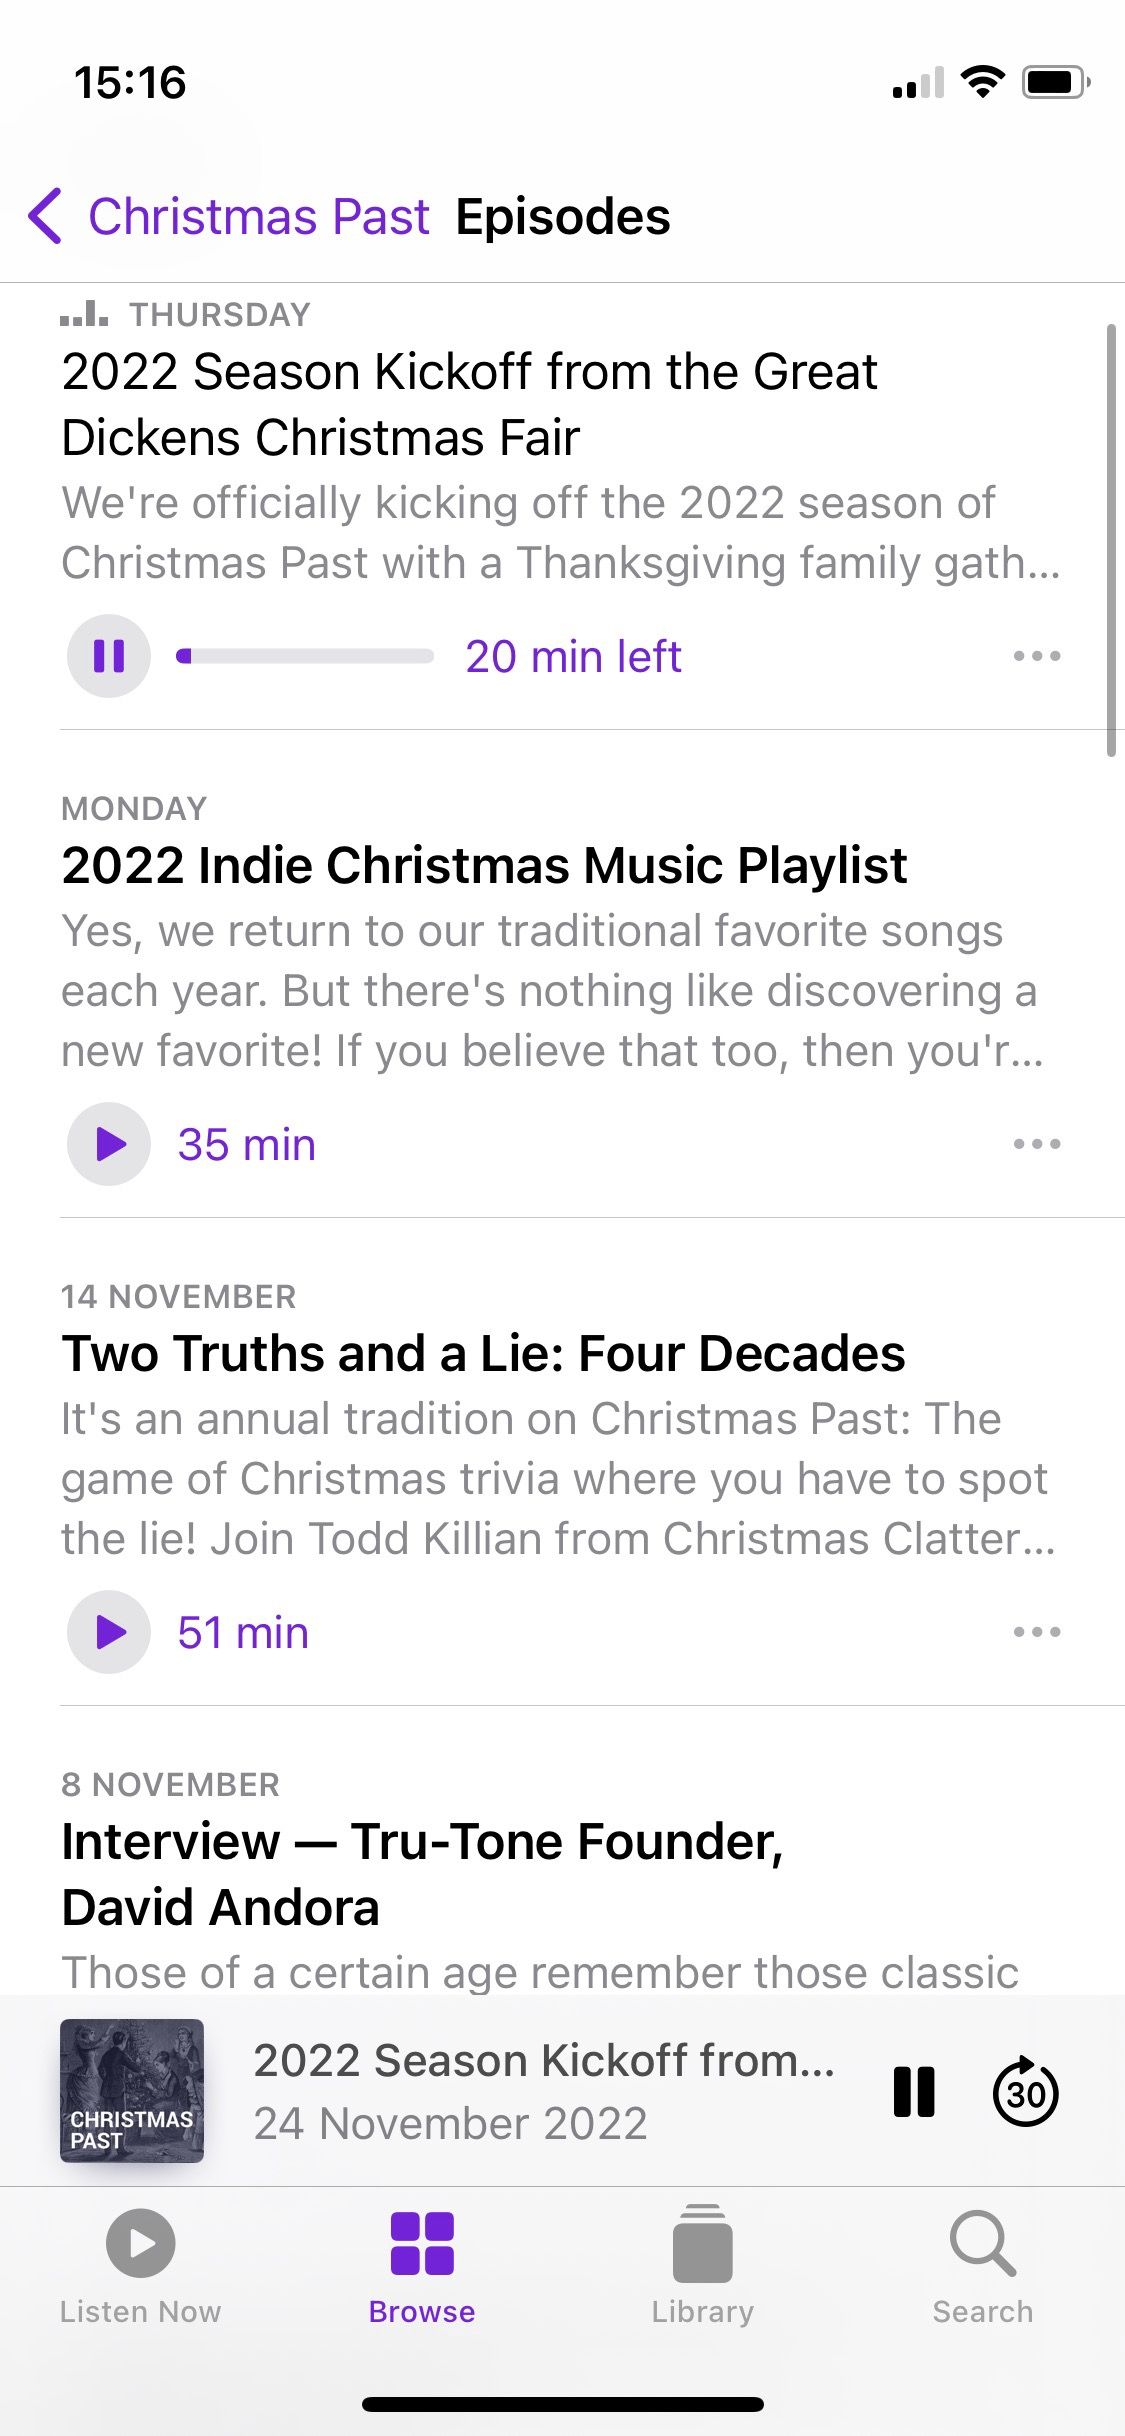 Capture d'écran du podcast Christmas Past montrant la liste des épisodes